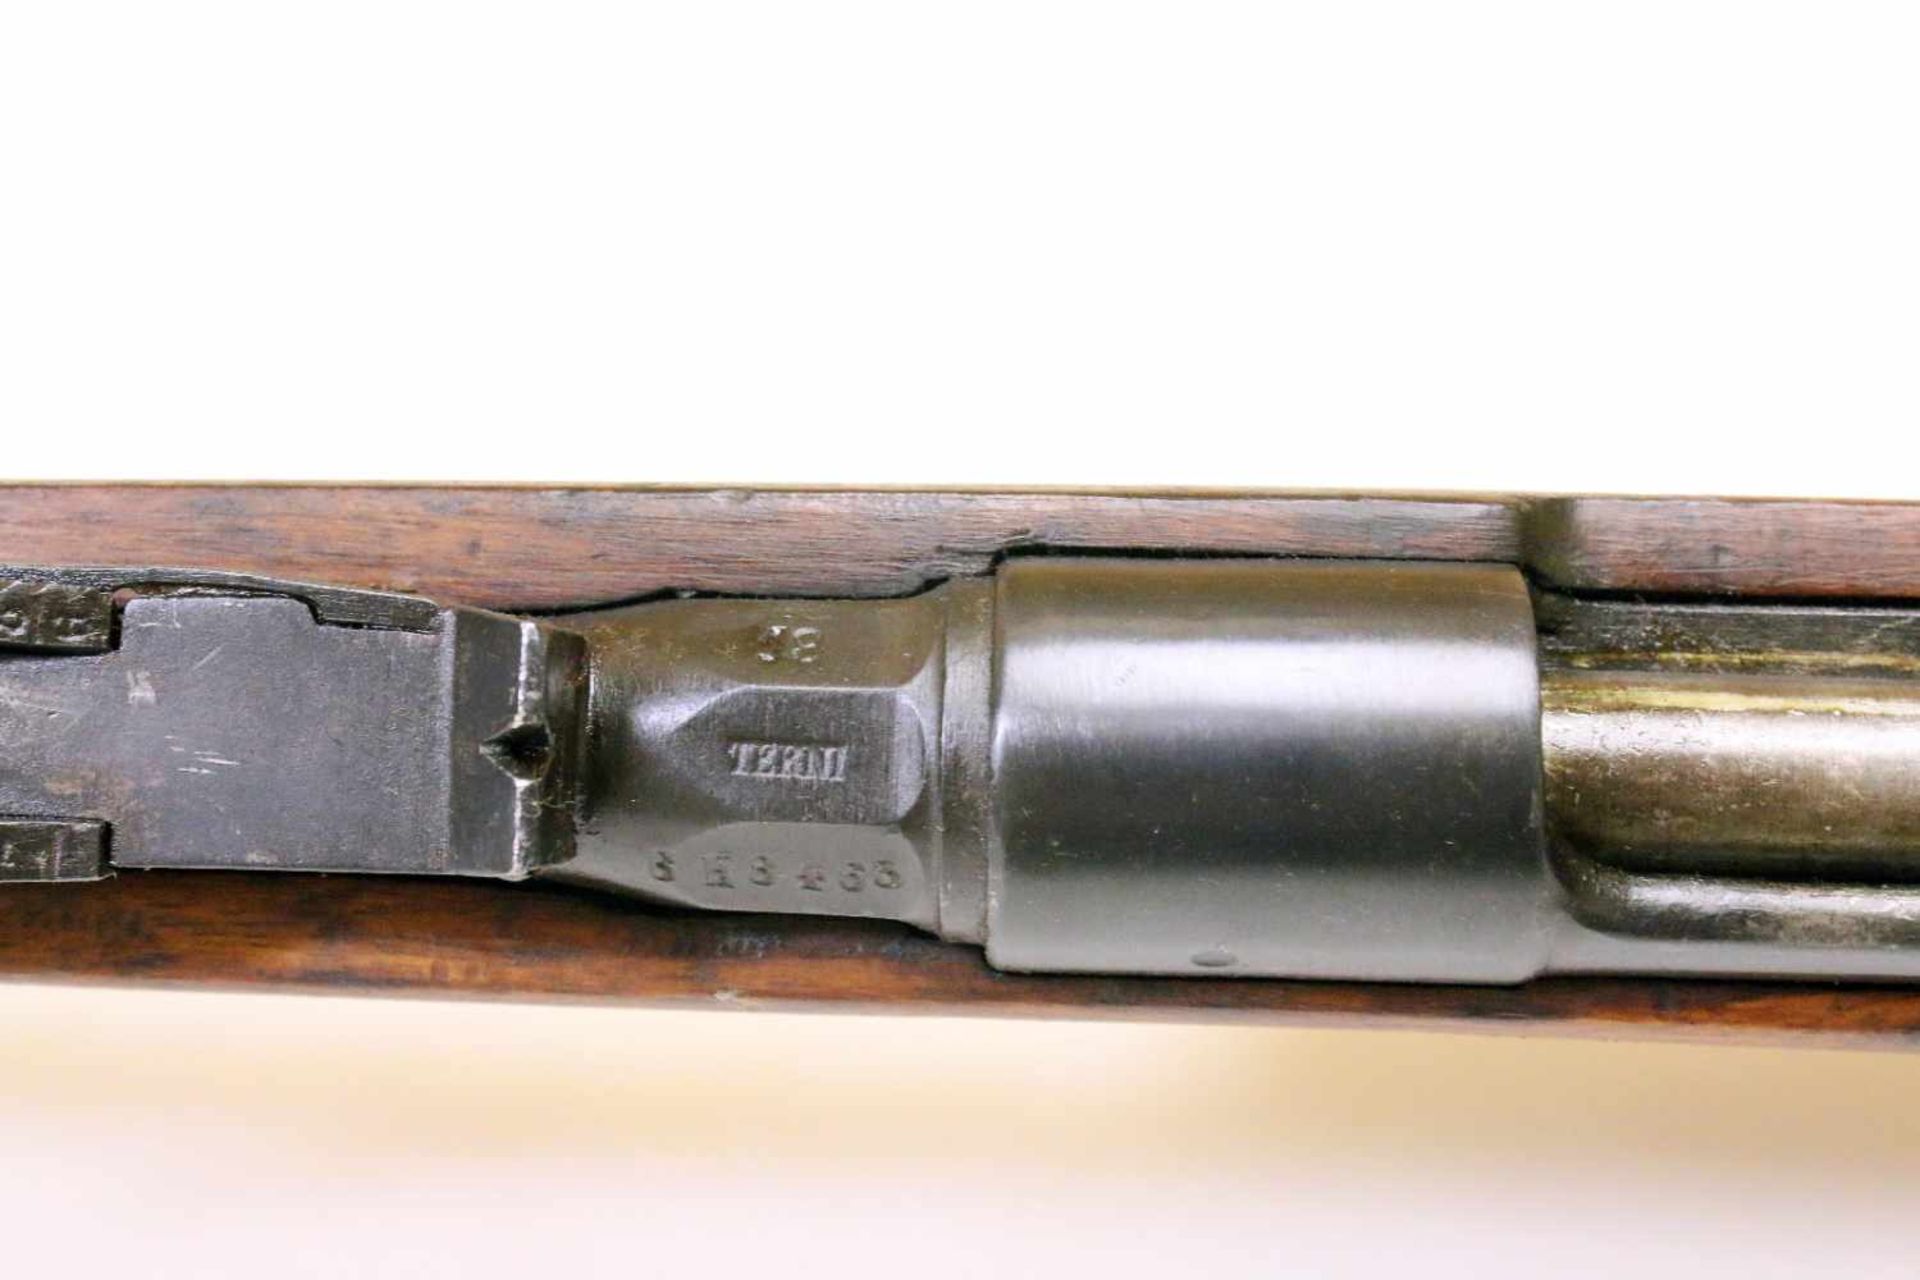 Gewehr Carcano M1891 Cal. 6,5 x 52mm, Laufseele matt, rauh. Auf der Laufwurzel bez. "Terni / 18", - Bild 11 aus 11